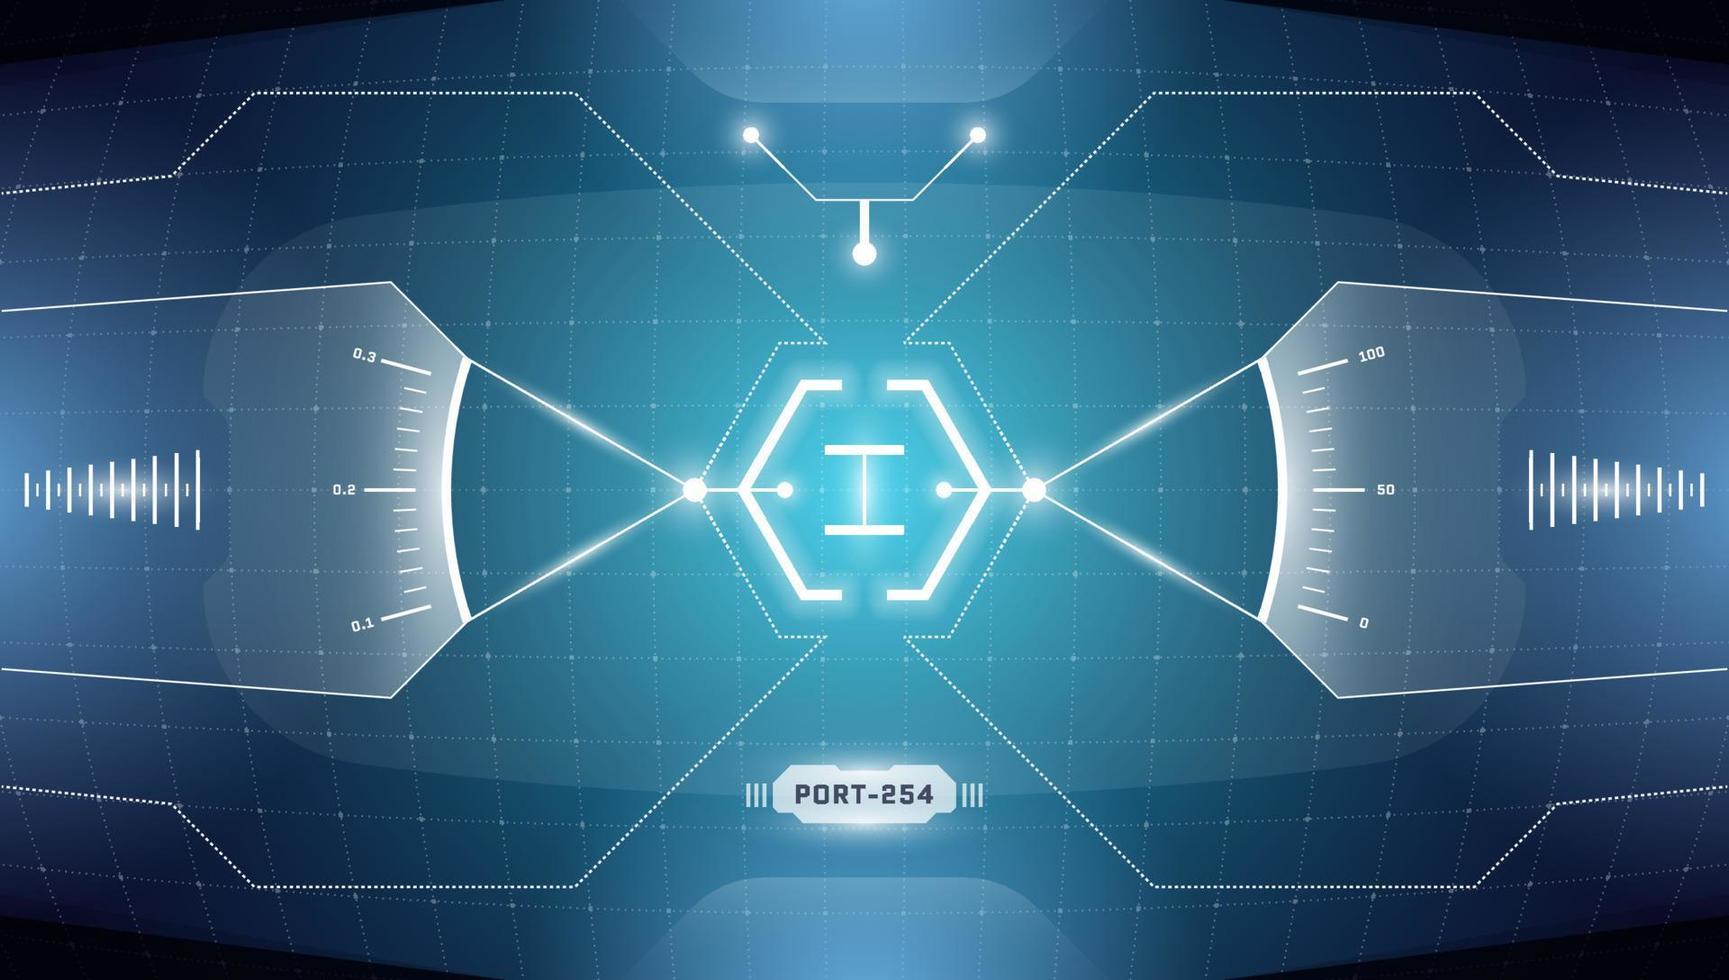 cible d'affichage tête haute de la technologie vr hud. interface de réalité virtuelle futuriste numérique cyberpunk écran de visière hi-tech. fui gui ui panneau de tableau de bord du cockpit du vaisseau spatial. illustration vectorielle abstraite eps vecteur